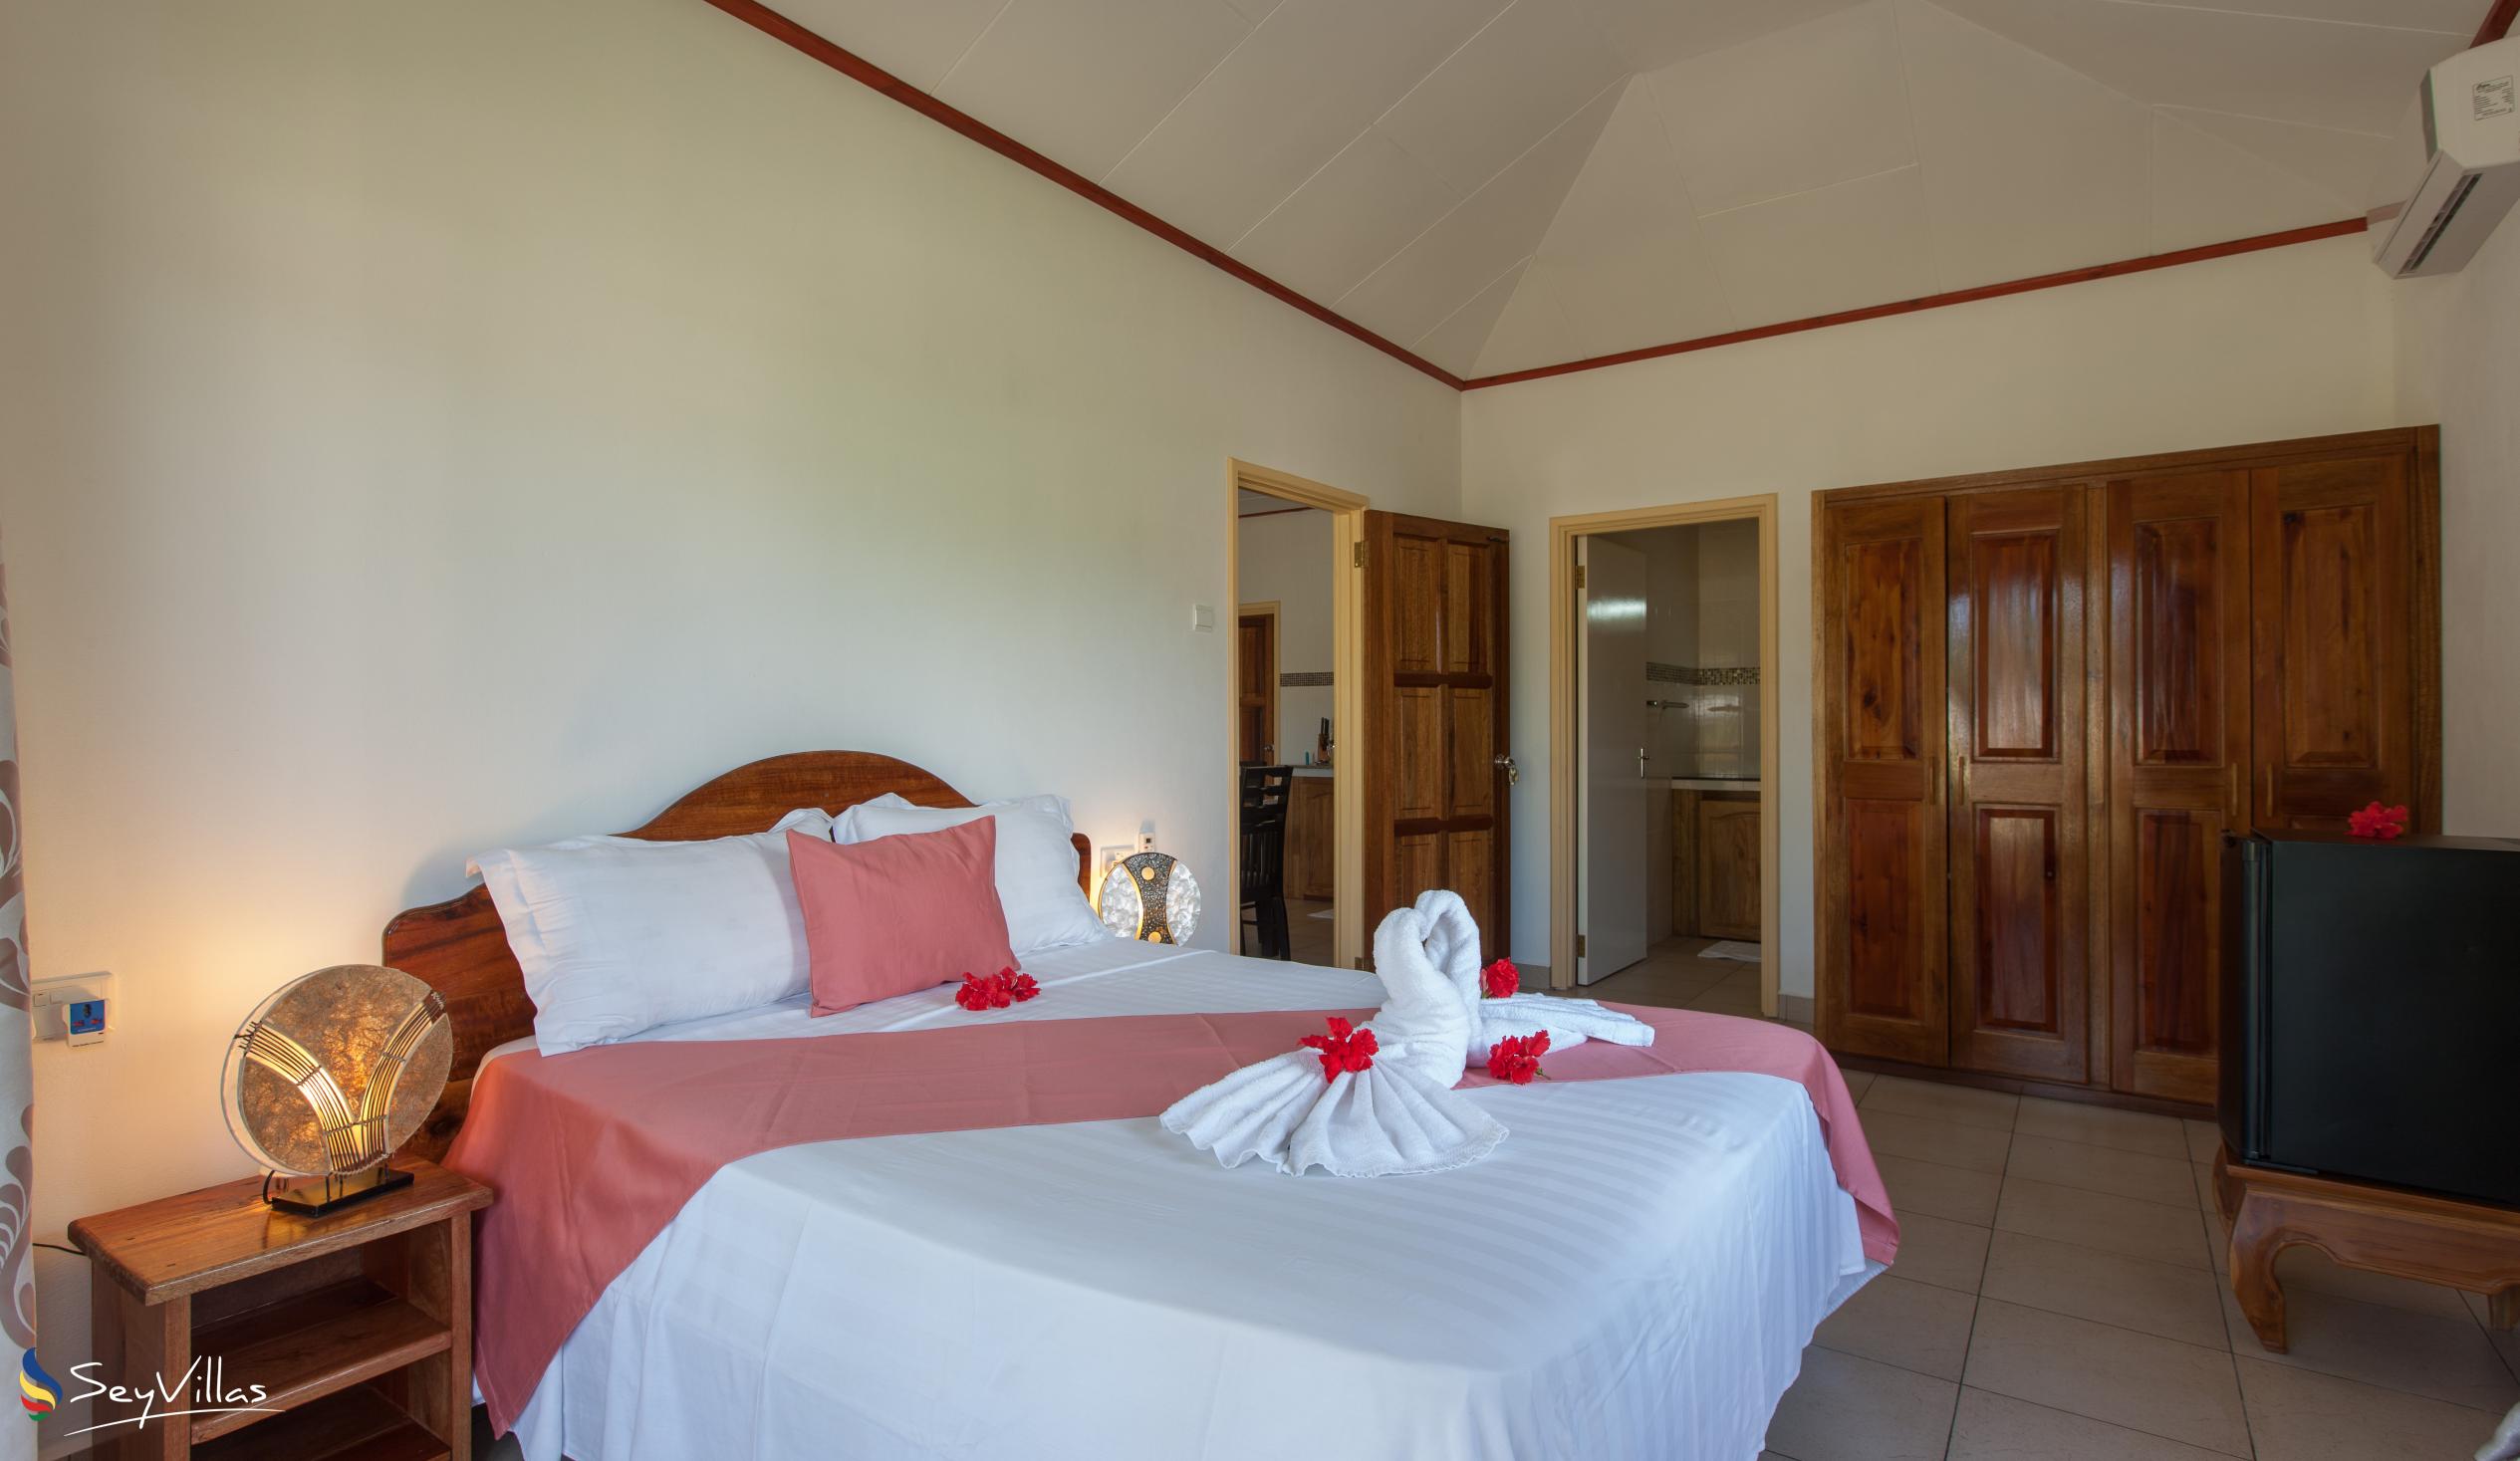 Foto 60: Hostellerie La Digue - Chalet 2 chambres - La Digue (Seychelles)